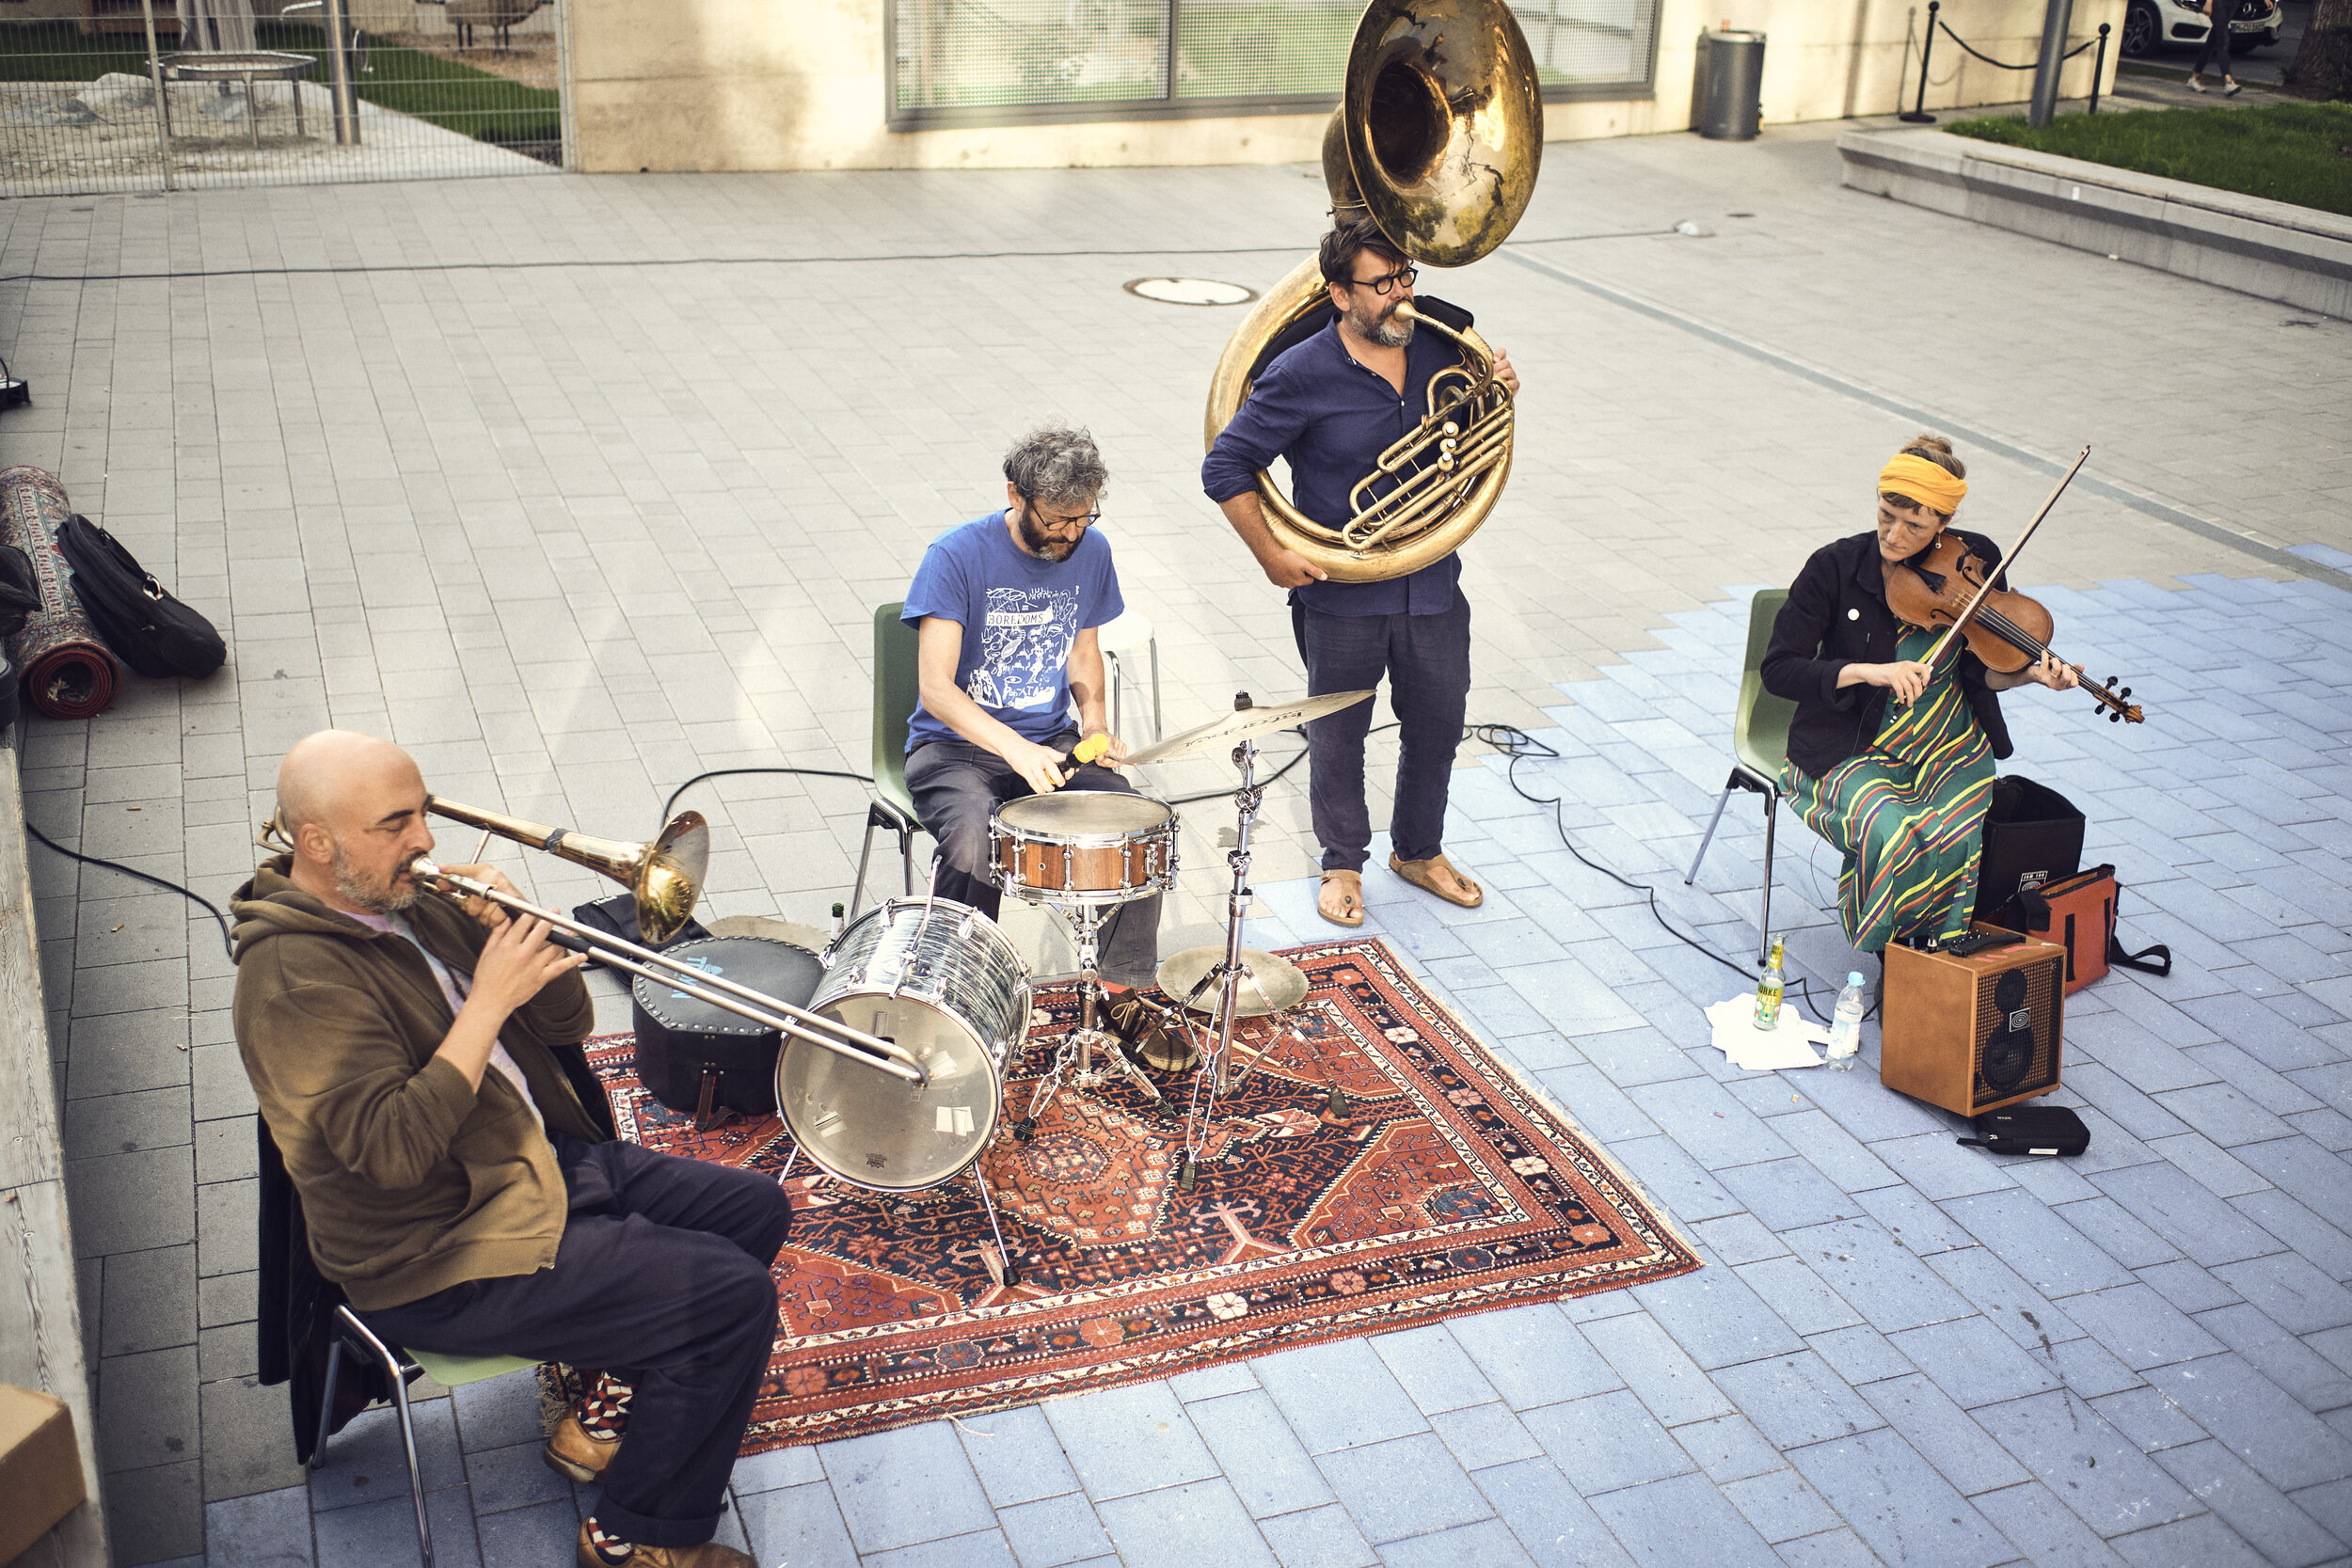  Die Band “Hochzeitskapelle” spielt auf dem Vorplatz. Blick von schräg oben auf die vier Bandmitglieder.  